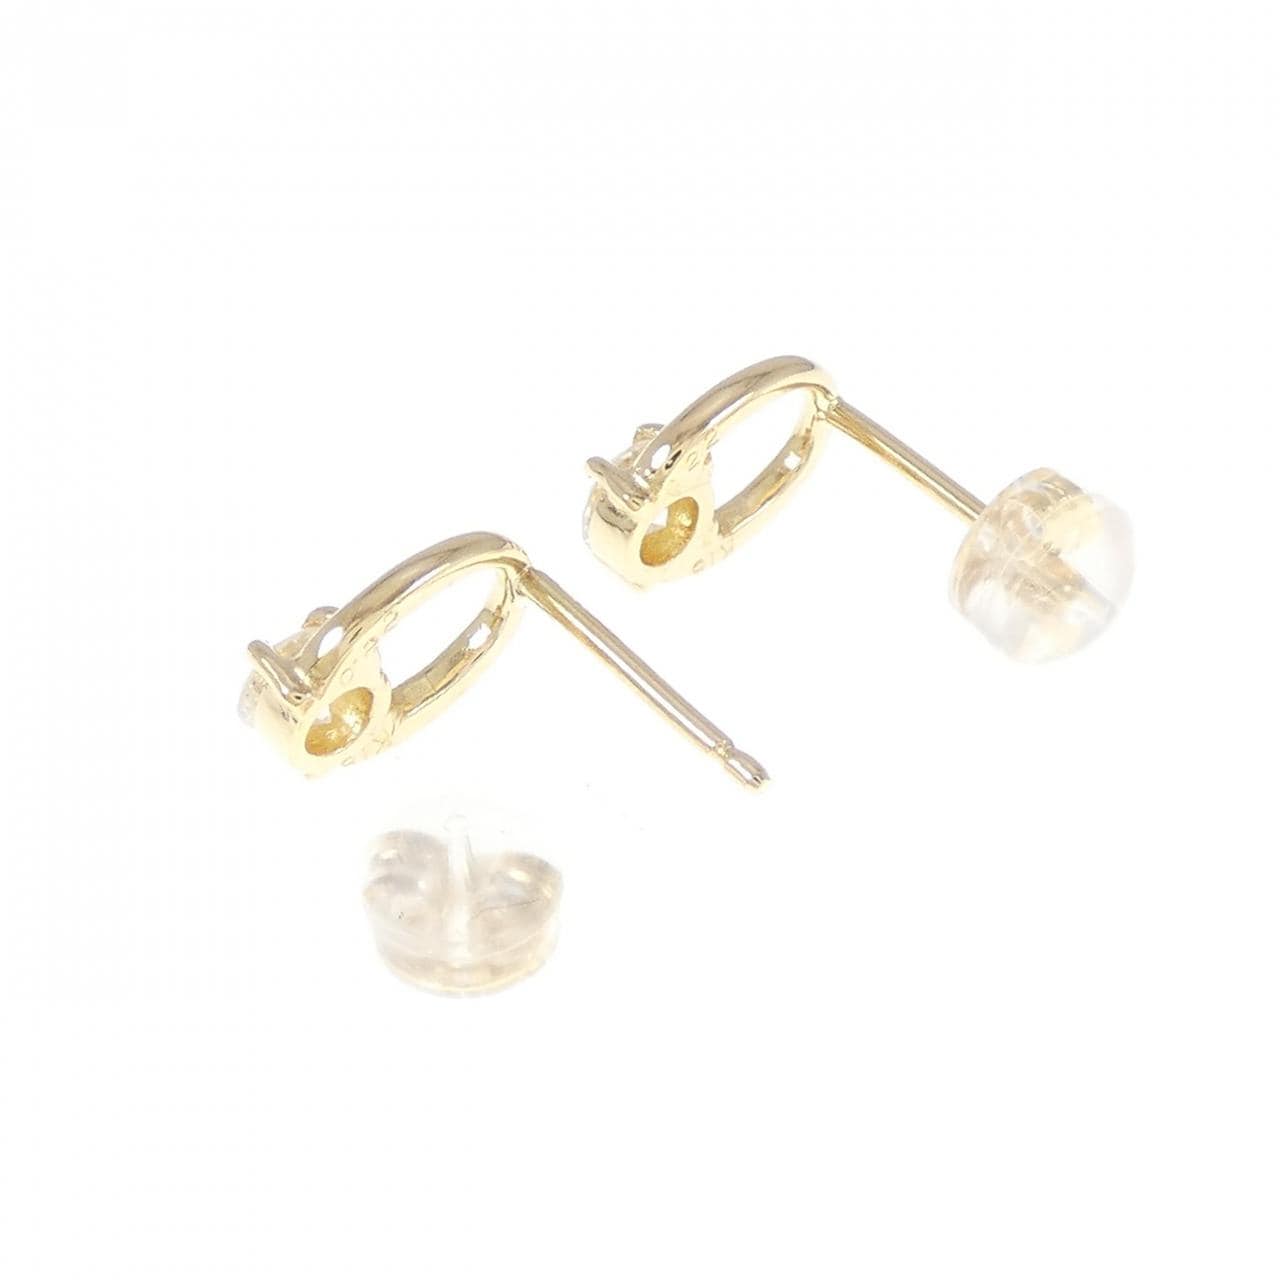 K18YG Diamond earrings 0.44CT